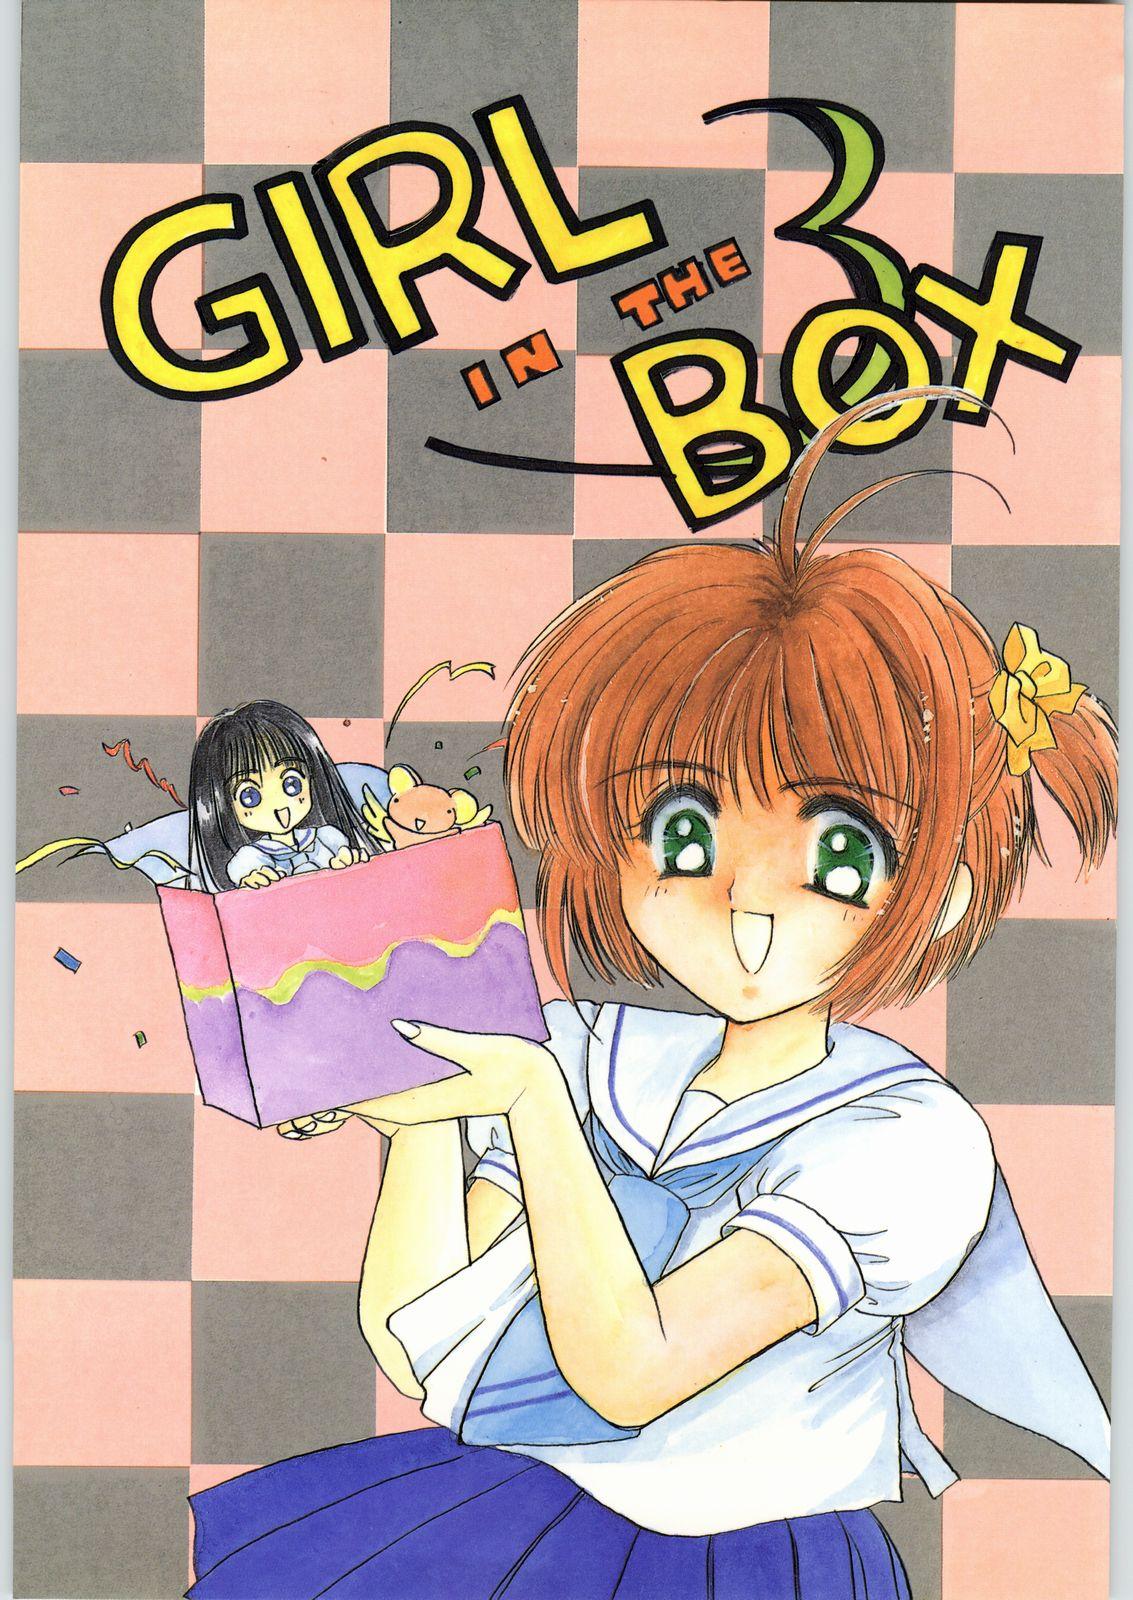 GIRL IN THE BOX 3 0